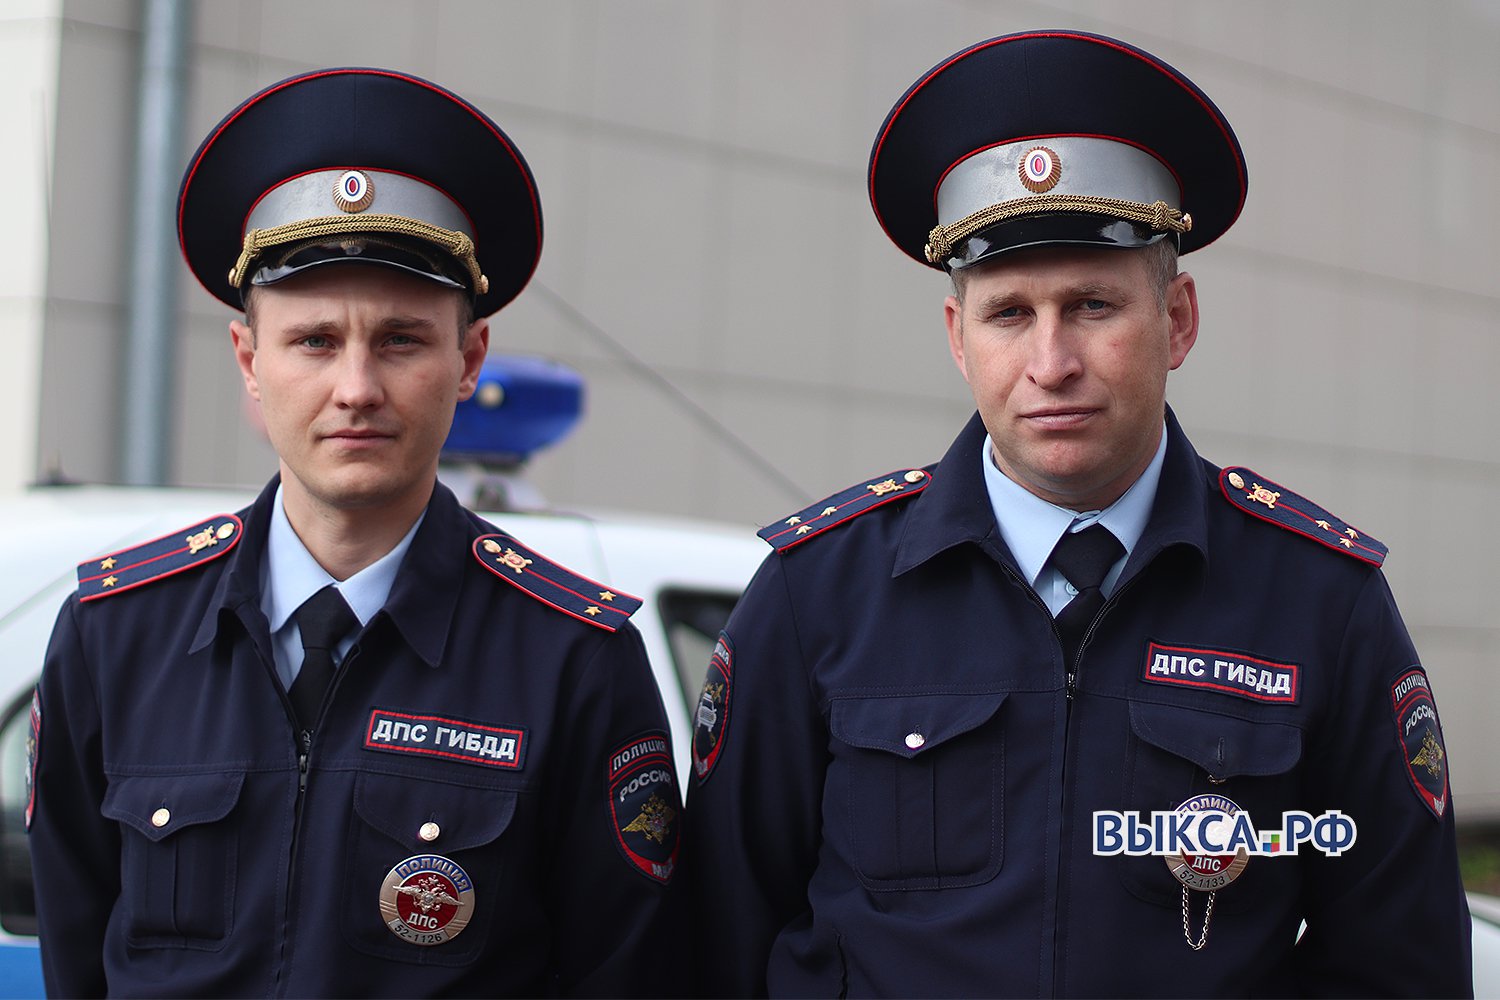 Автоинспекторов наградили медалями МЧС за спасение людей на пожаре 🏅